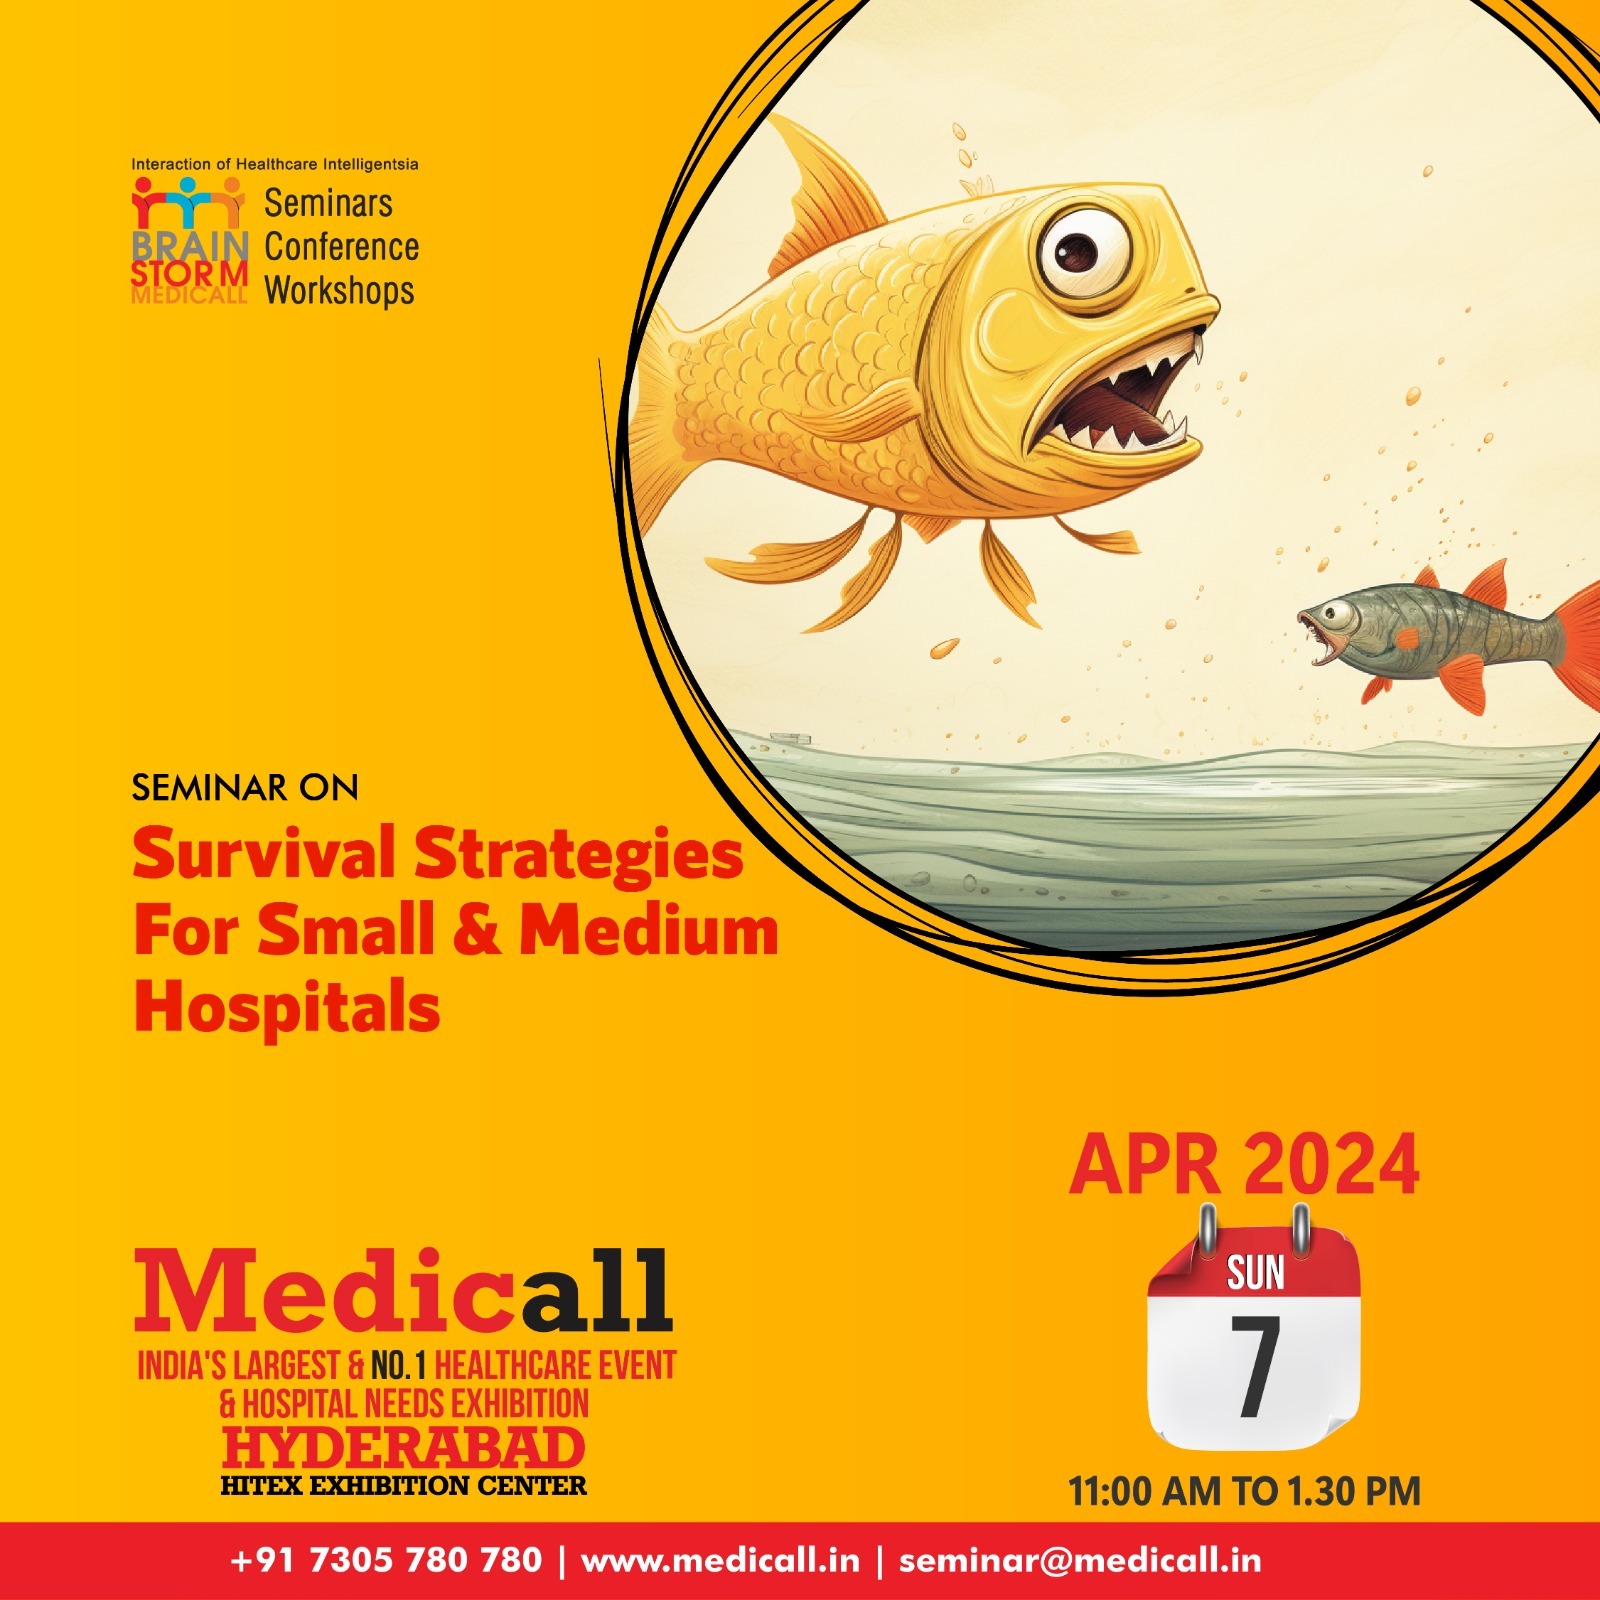 Survival Strategies for Small & Medium Hospitals